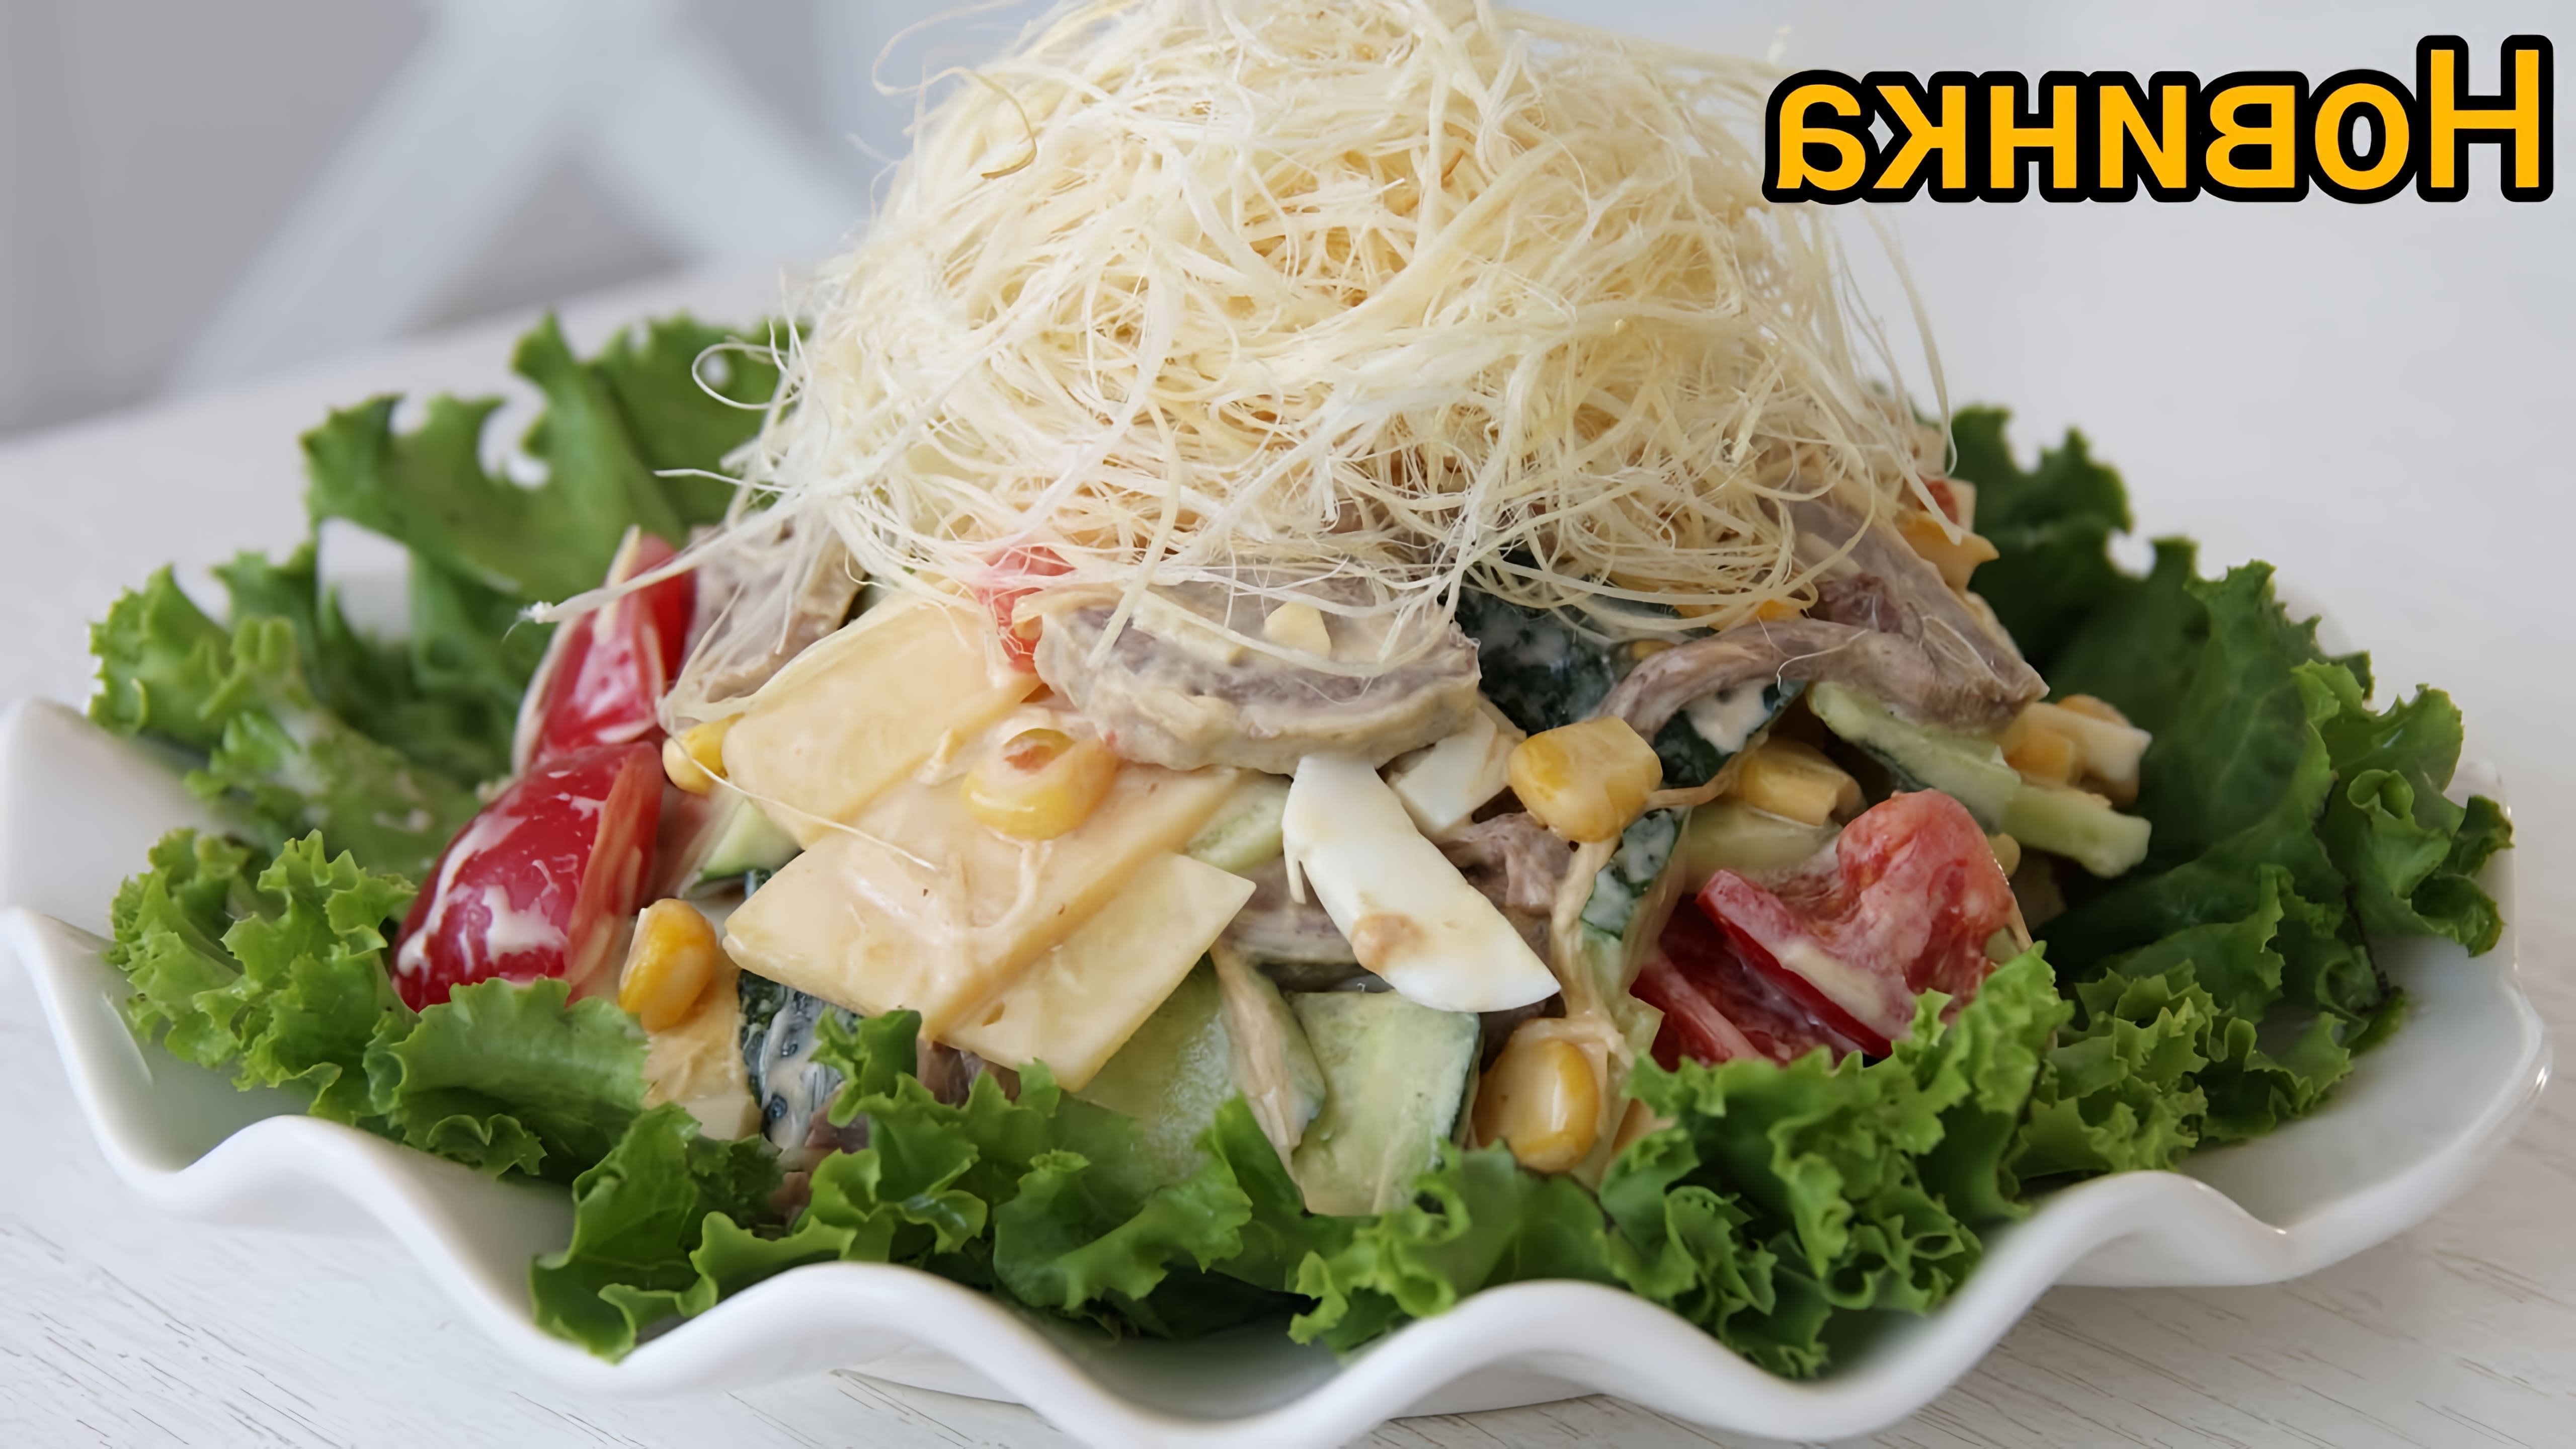 Королевский салат - это вкусное и полезное блюдо, которое можно приготовить в домашних условиях